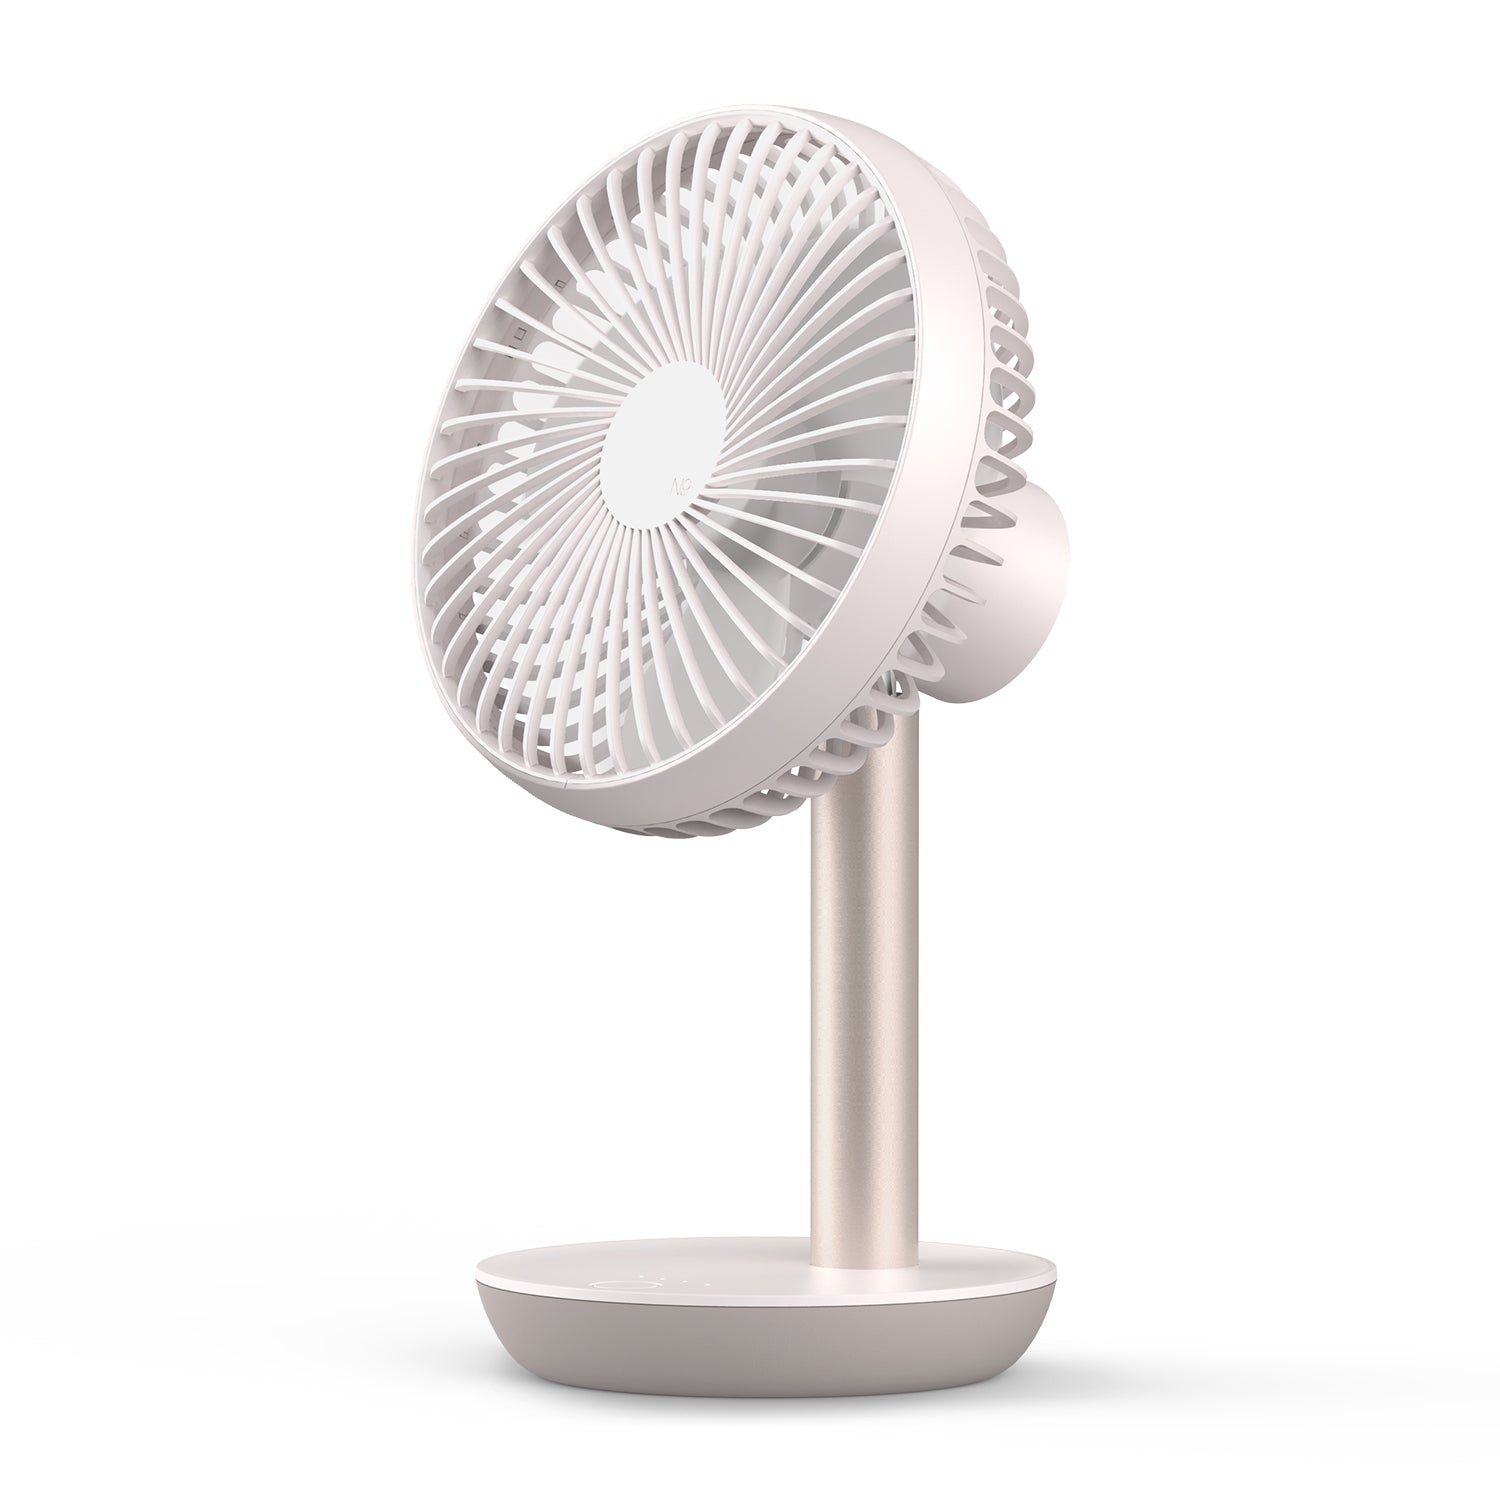 Lumena N9-Fan Stand2 / N9 Fan Stand2 / Rechargeable Desktop Circulator Fan